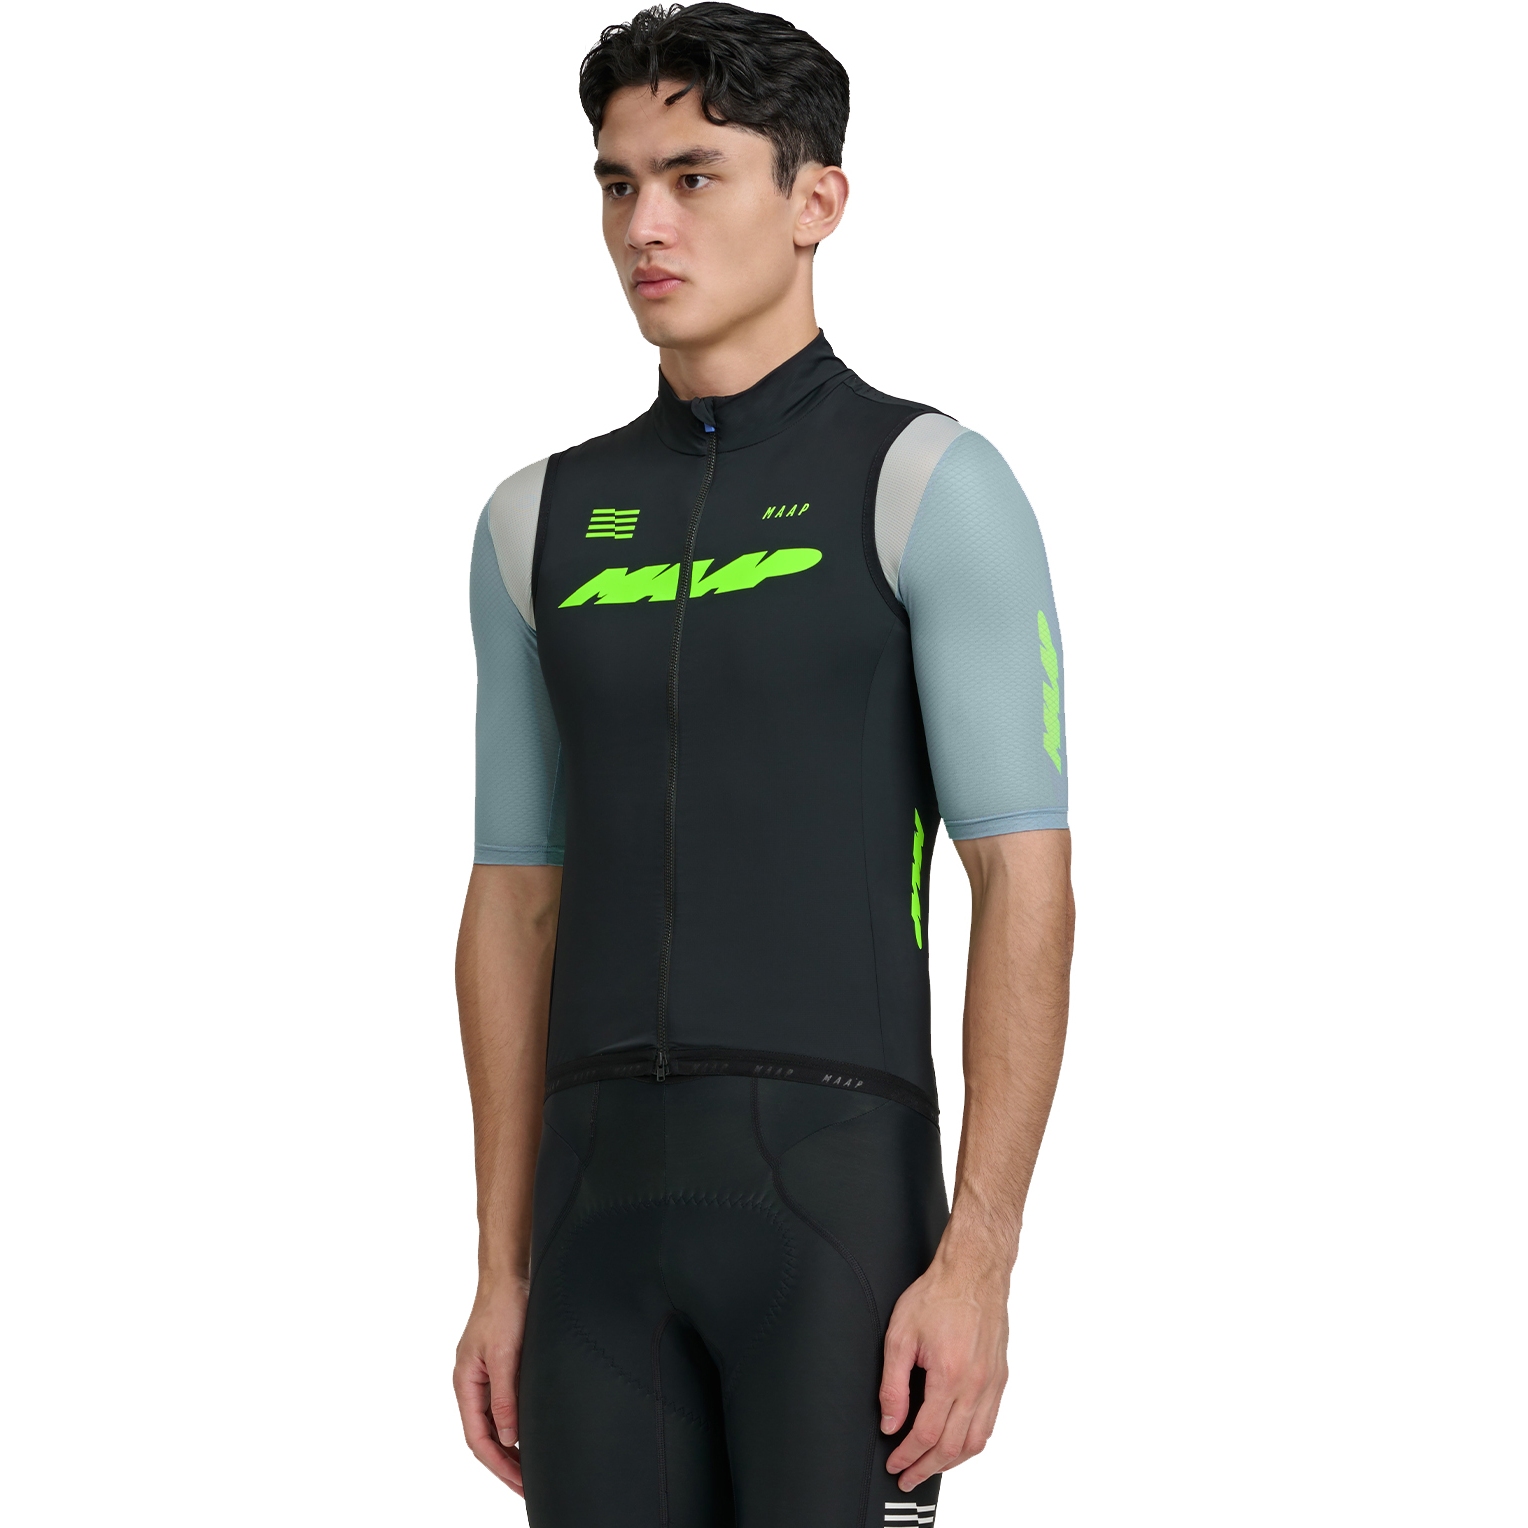 Productfoto van MAAP Eclipse Draft Vest Heren - zwart